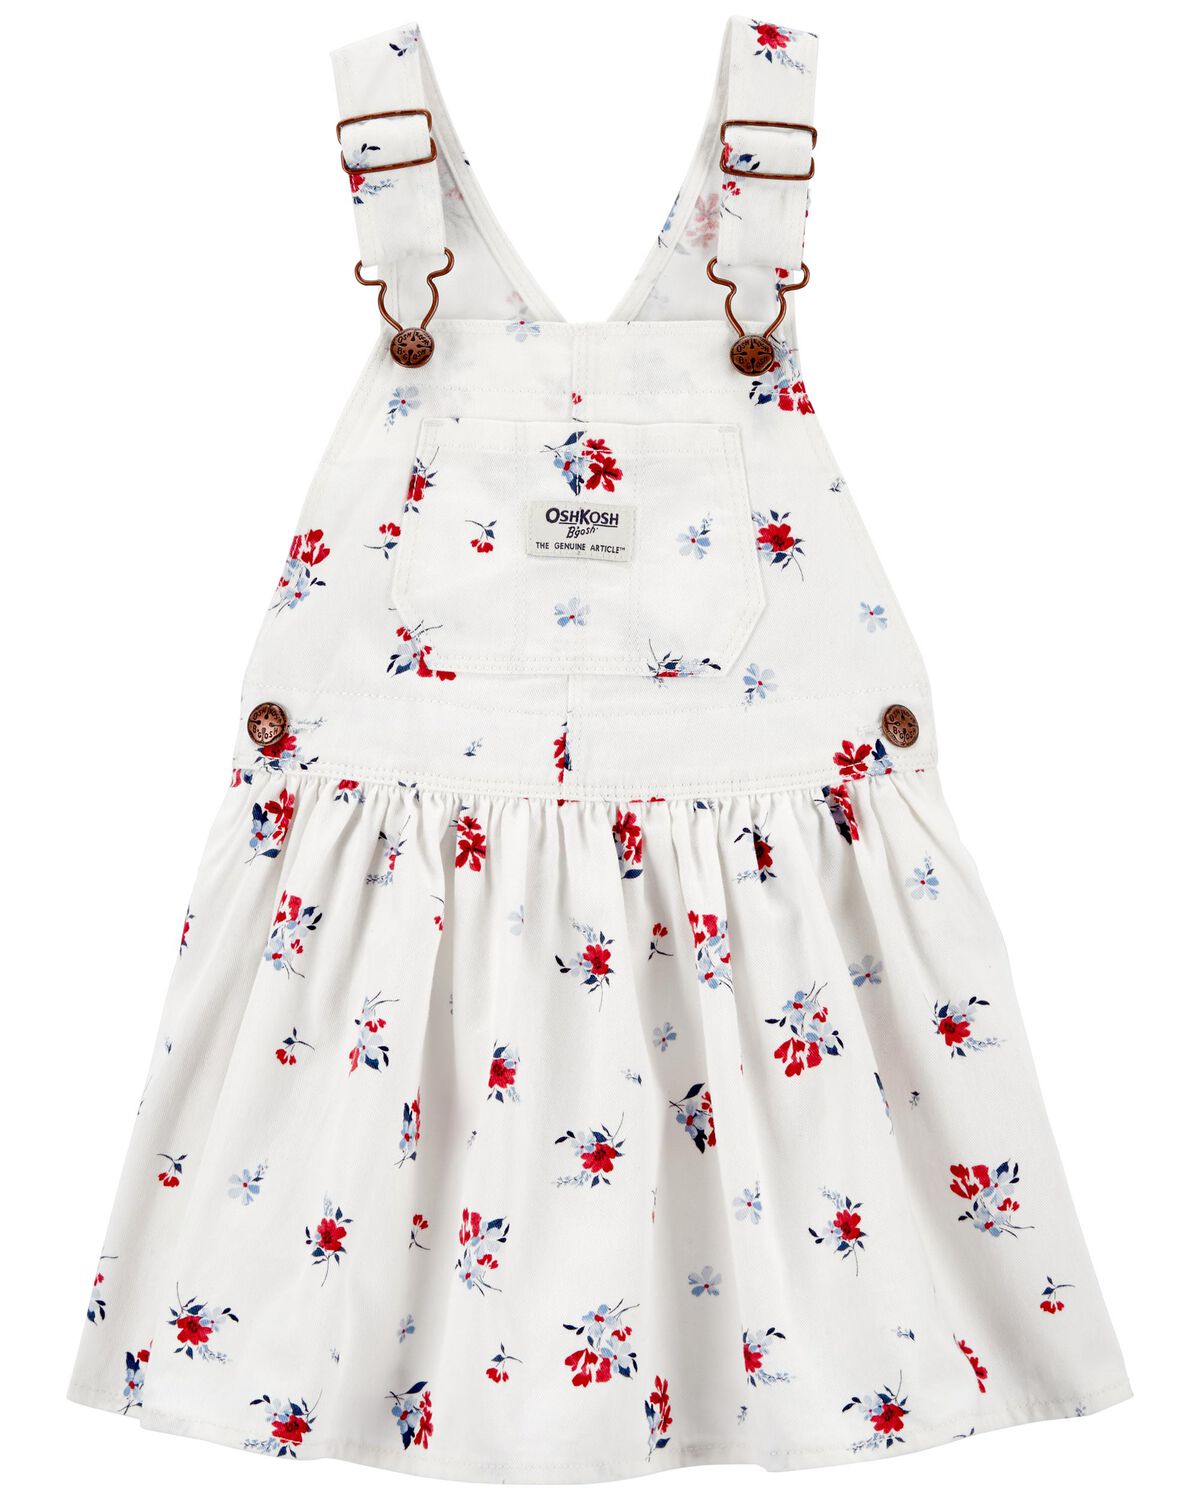 Toddler Floral Print Jumper Dress